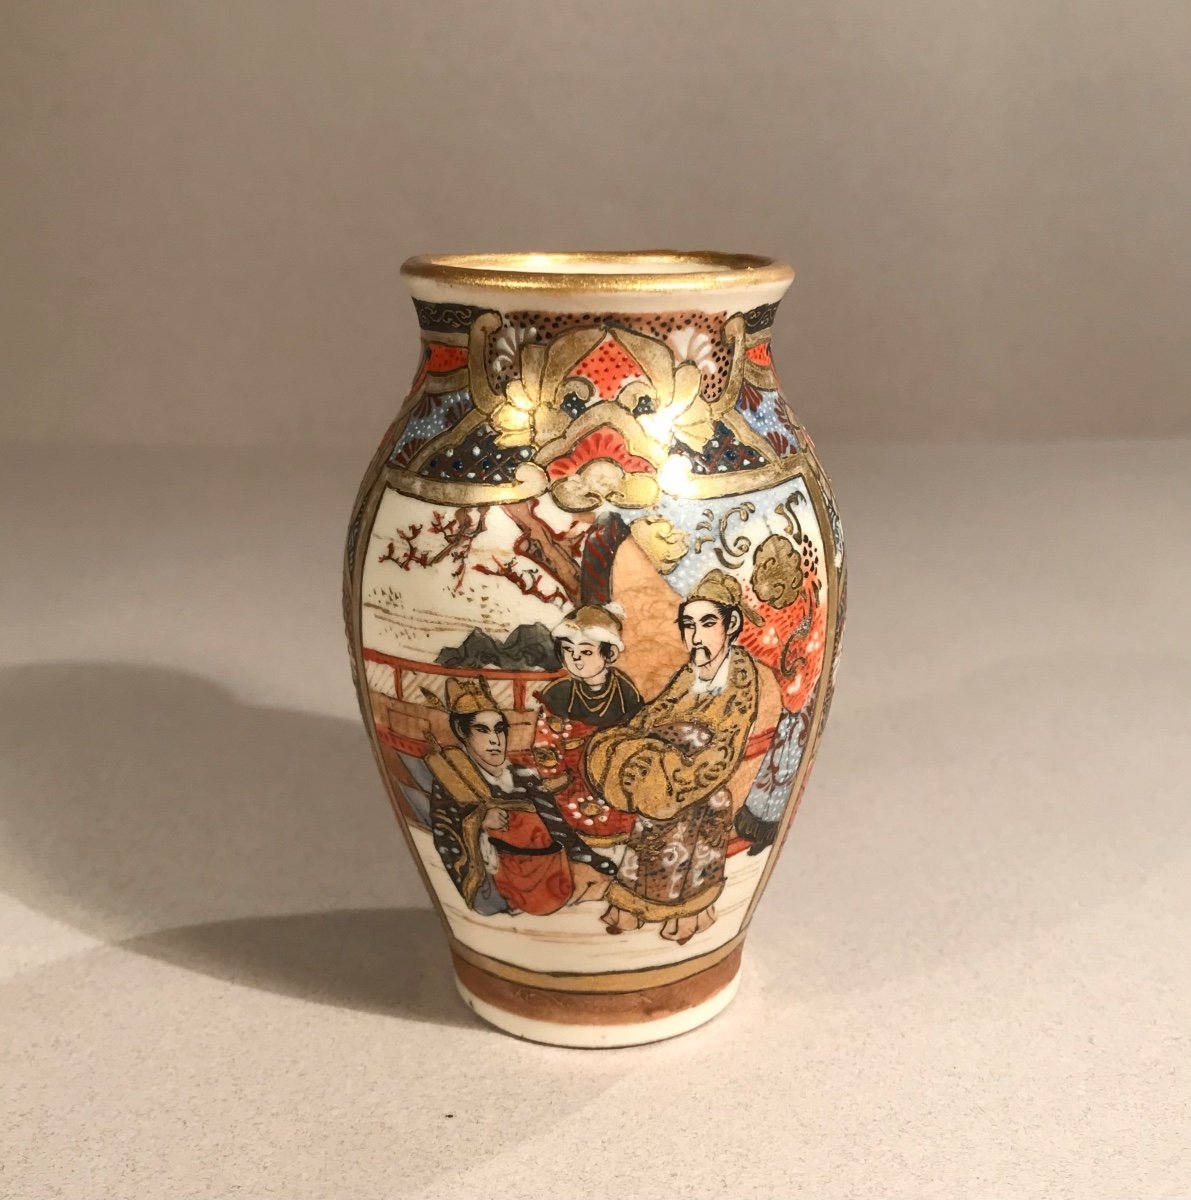 Asian Arts Japan Satsuma Kilns Meiji Period Miniature Earthenware Vase With Enamelled Decor 1880/90-photo-2